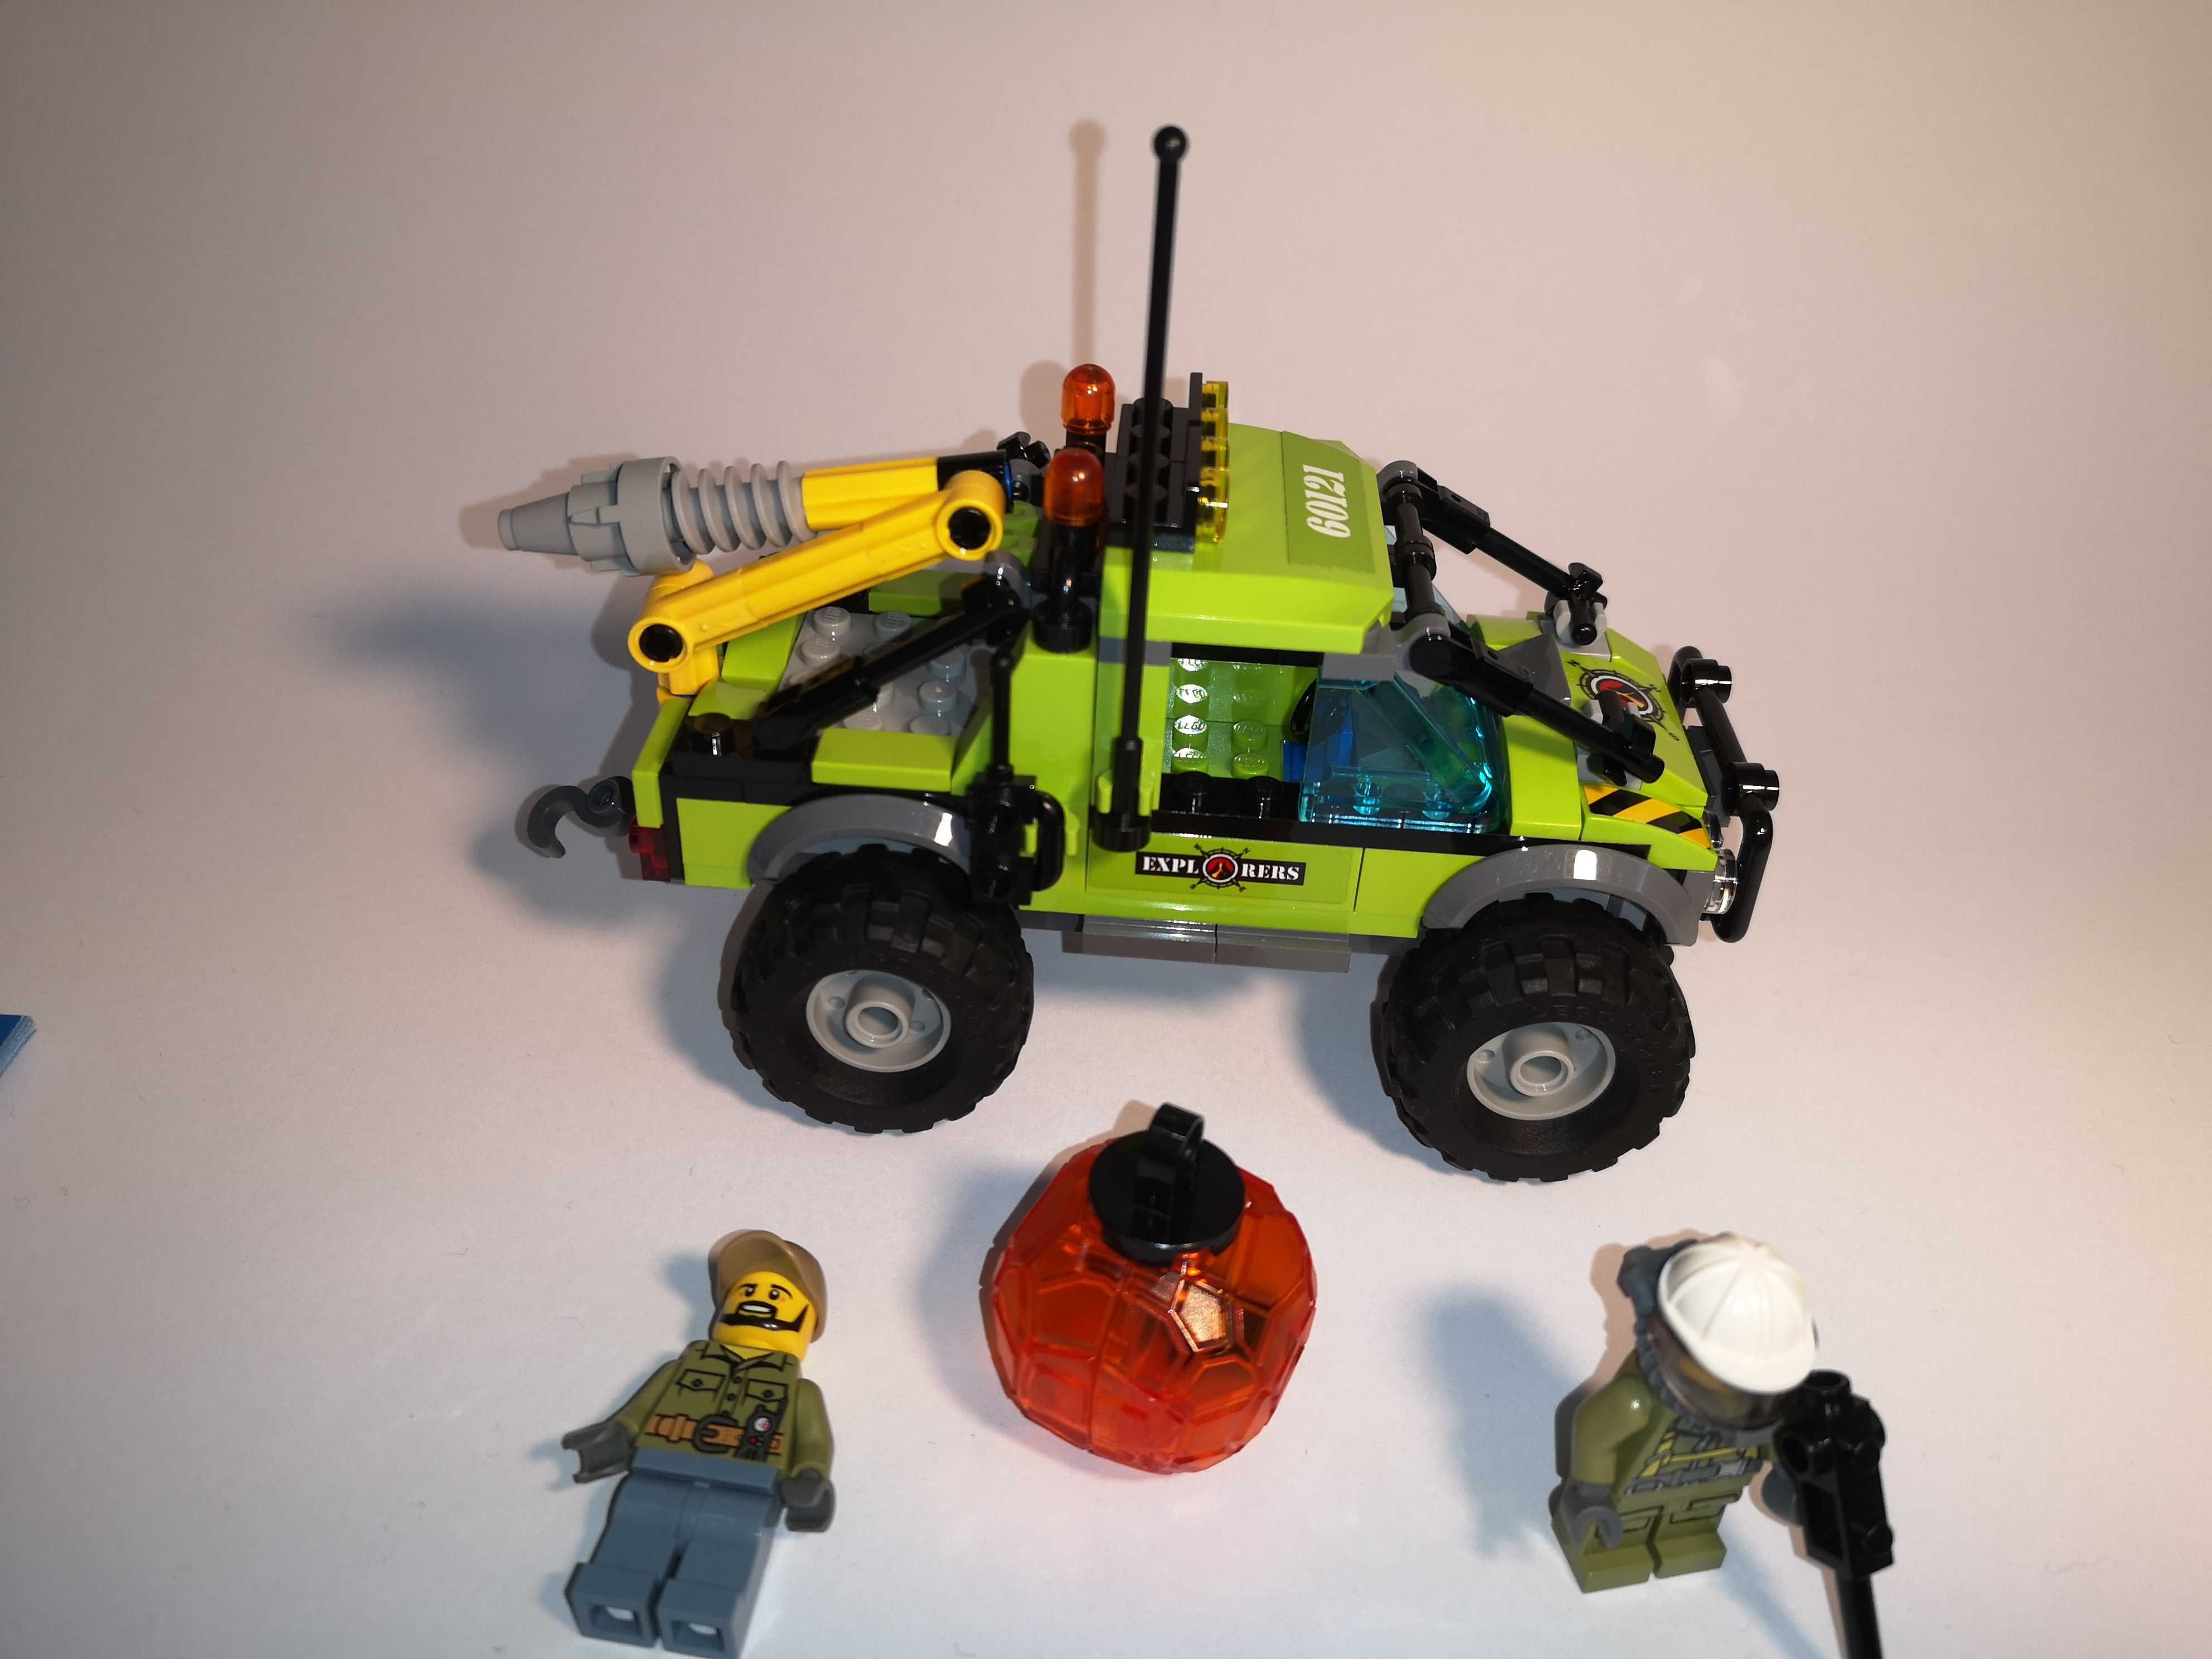 LEGO 60121 City Samochód naukowców - kompletny 100%